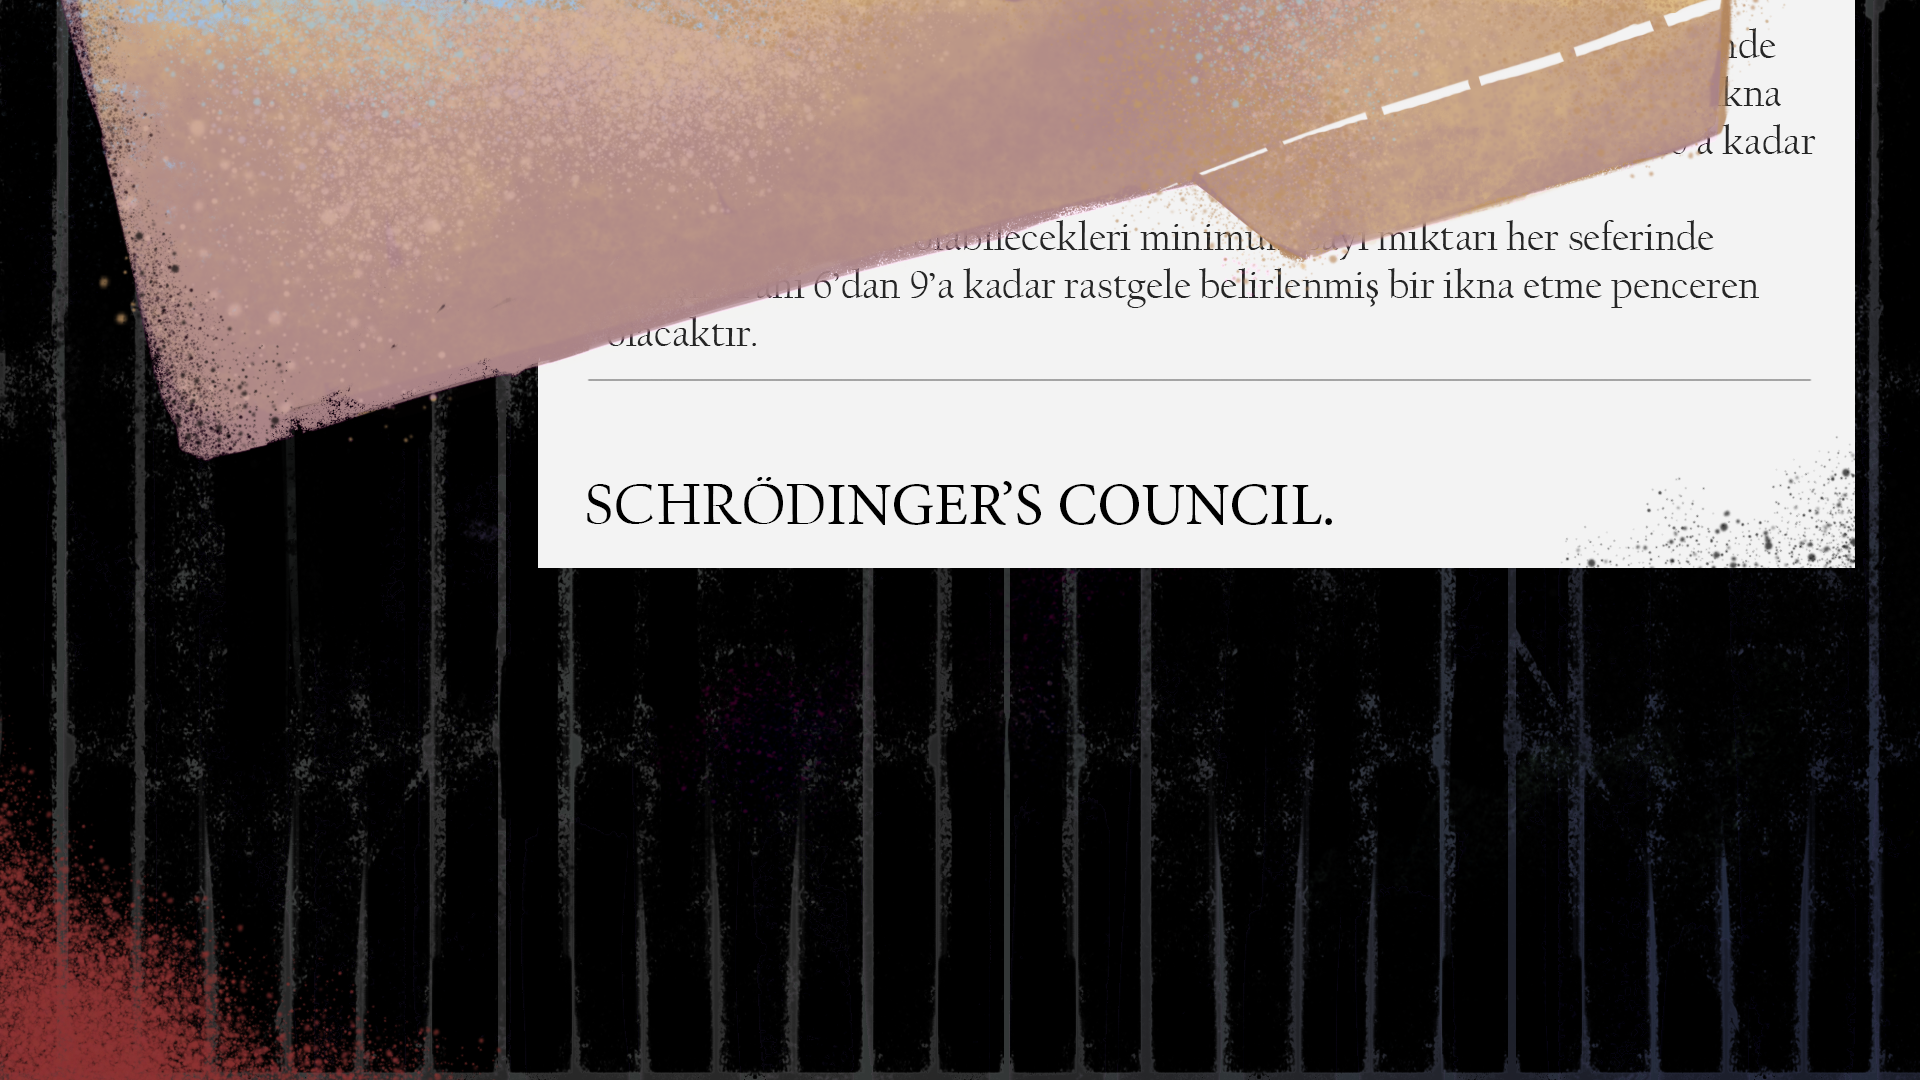 Schrodinger's Council